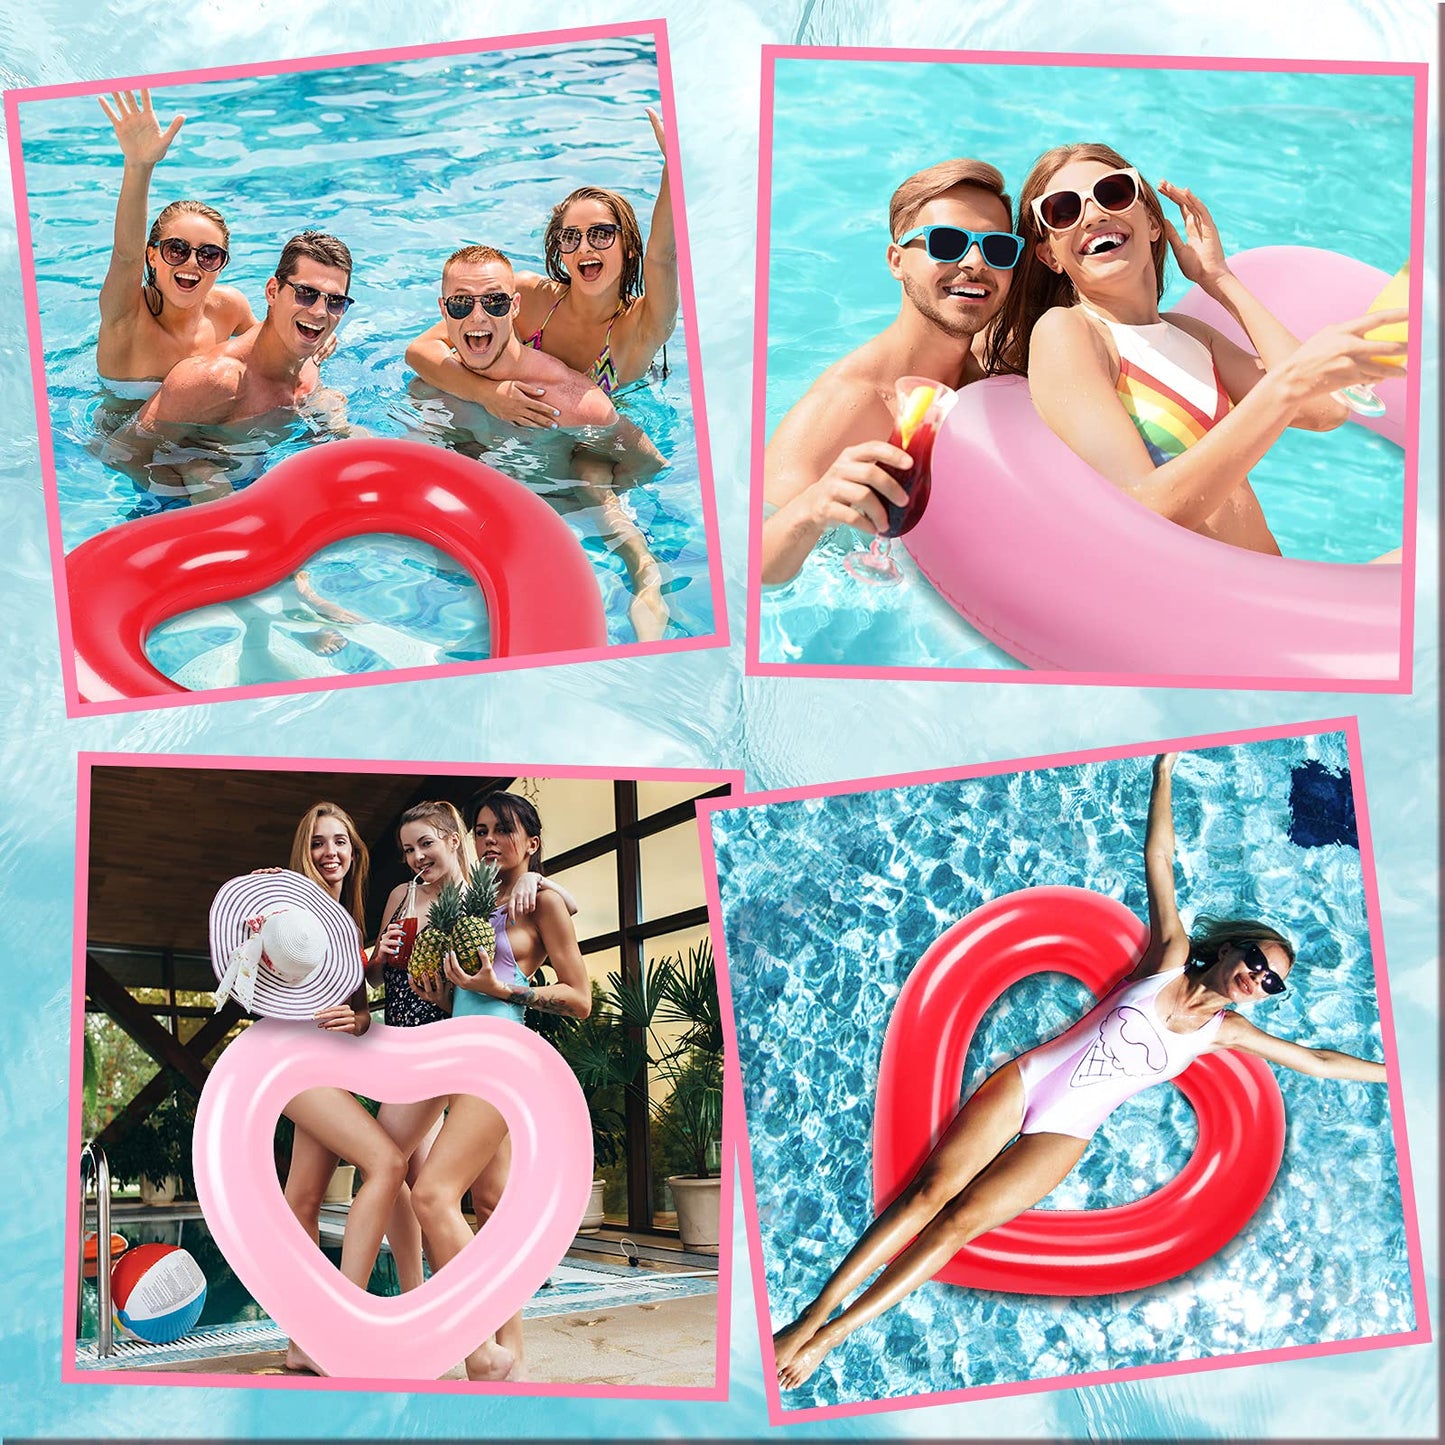 Lot de 2 flotteurs de piscine en forme de cœur, anneaux de natation gonflables de 120 x 100 cm pour enterrement de vie de jeune fille, anneau de natation d'été en forme de cœur, fête sur la plage pour adultes (rose, rouge) Rose, rouge